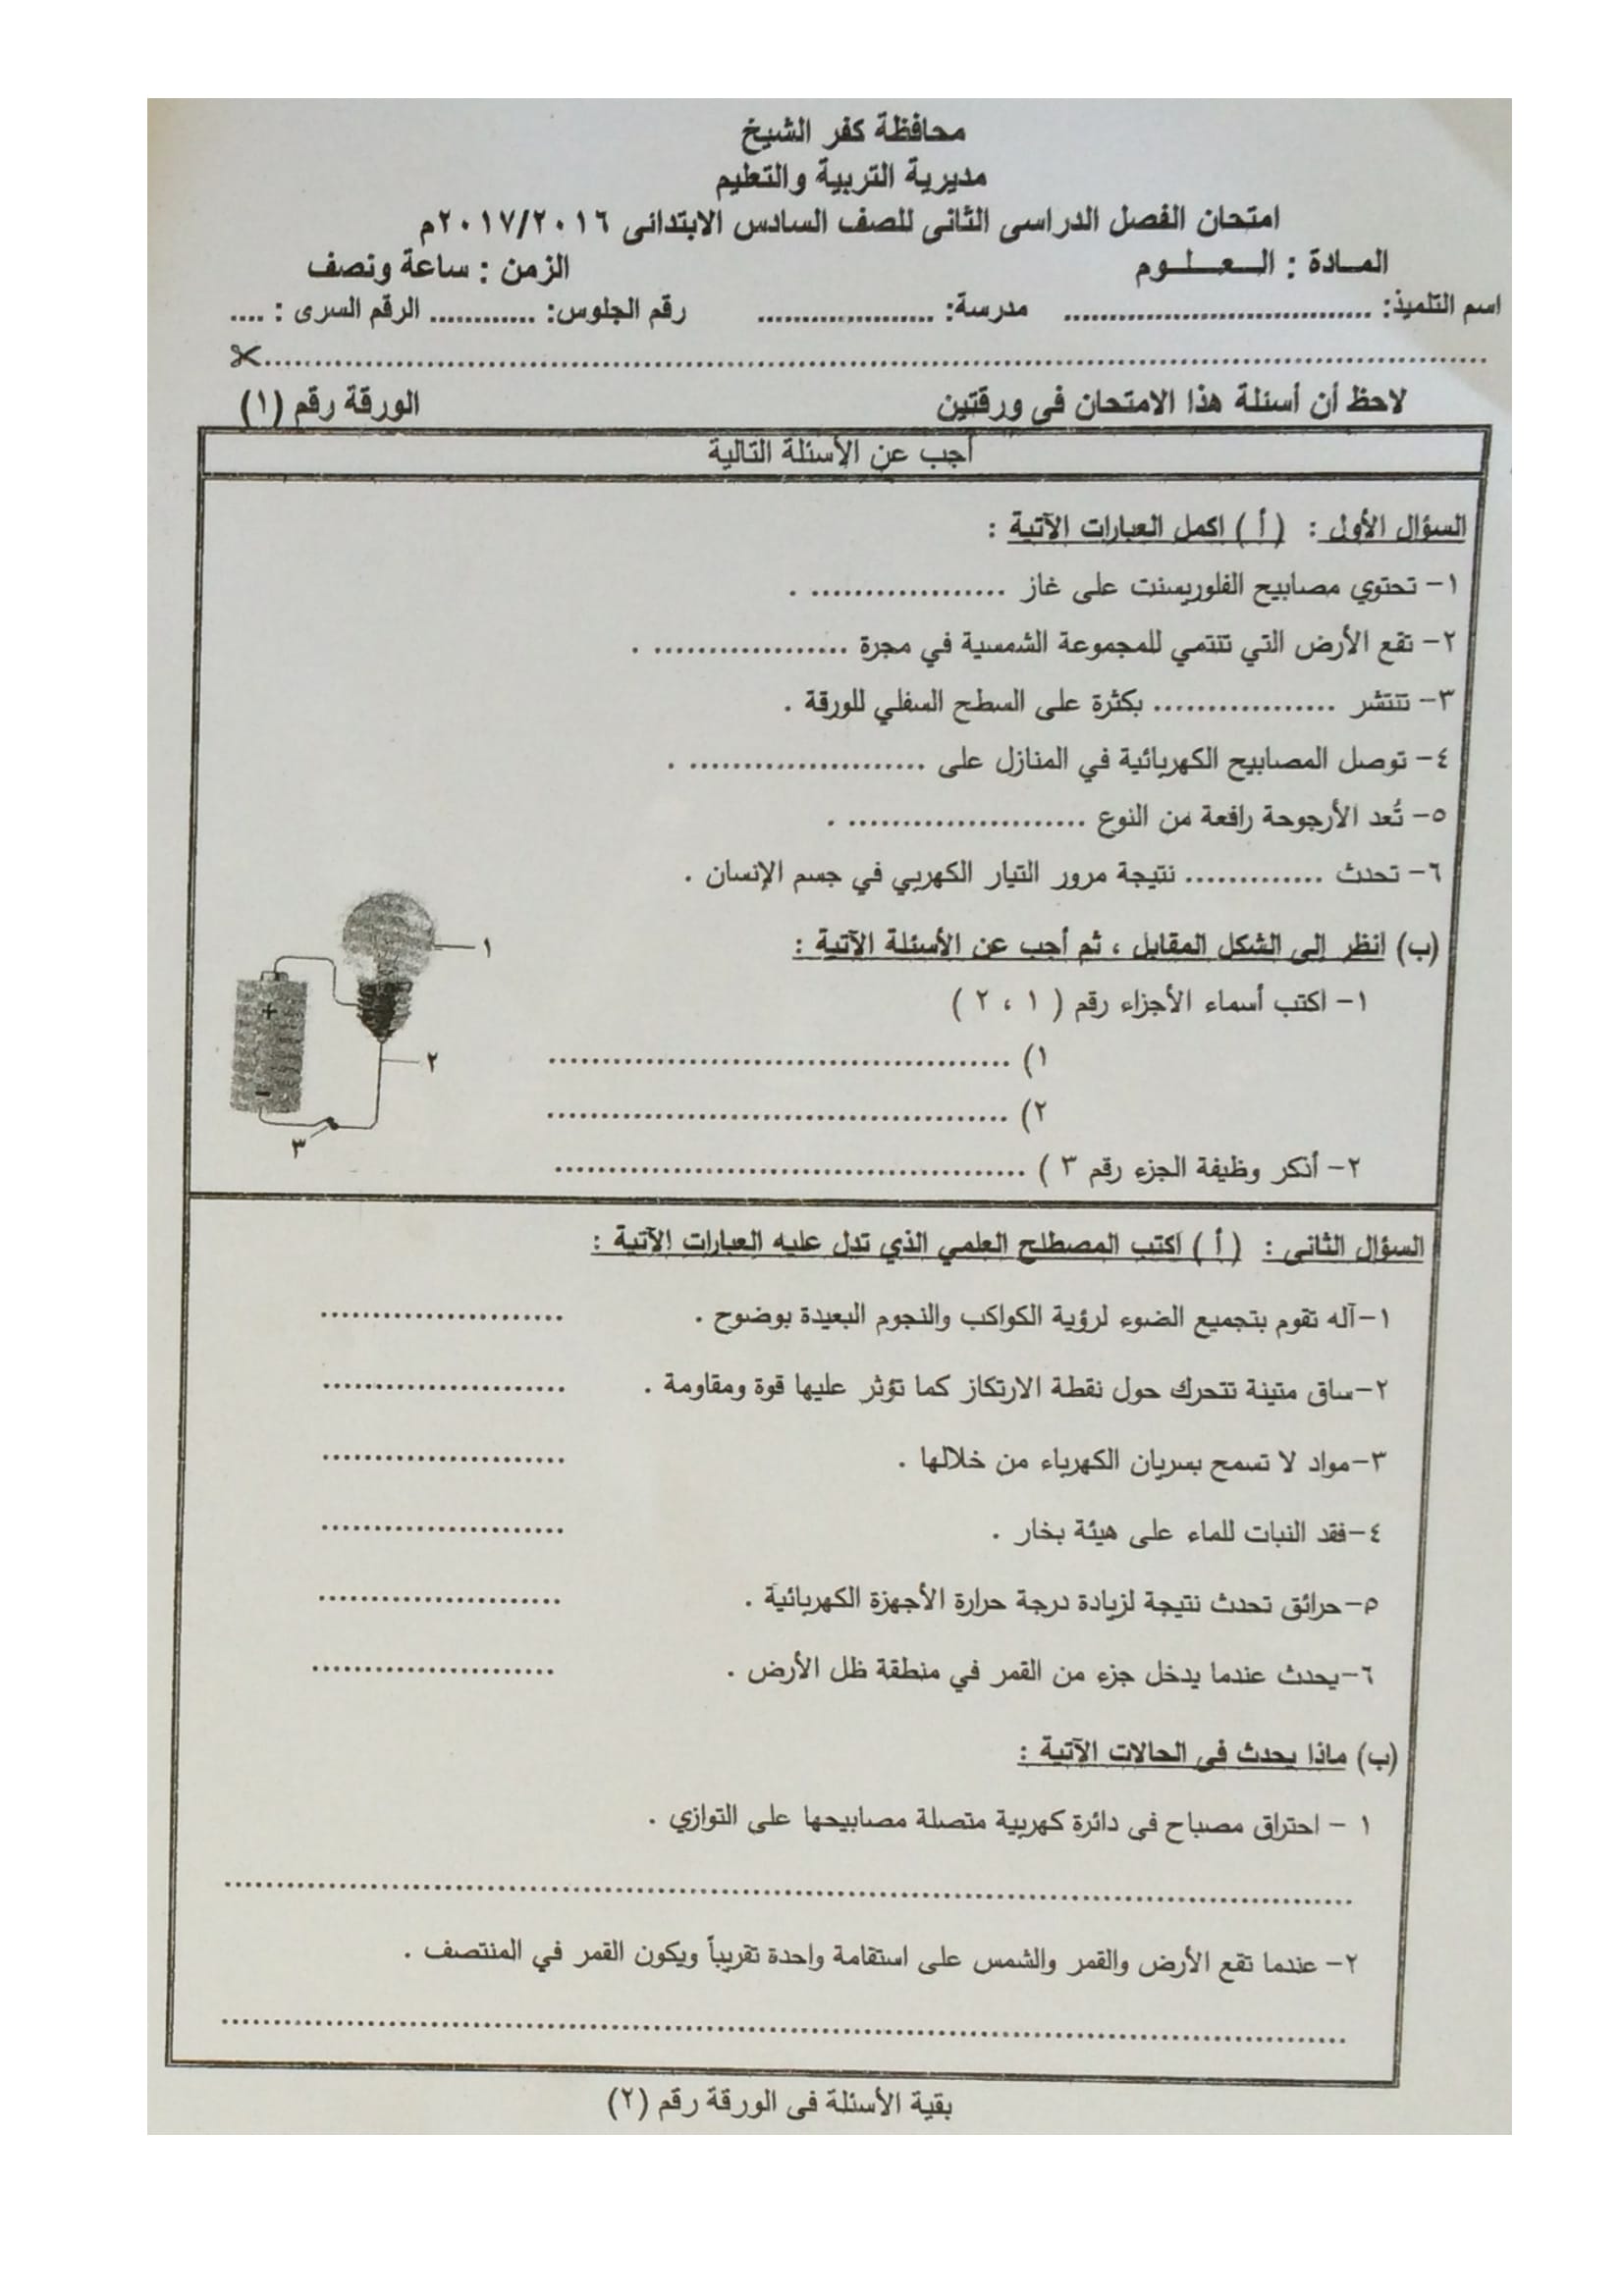 امتحان العلوم للصف السادس الابتدائى الترم الثانى 2017 محافظة كفر الشيخ